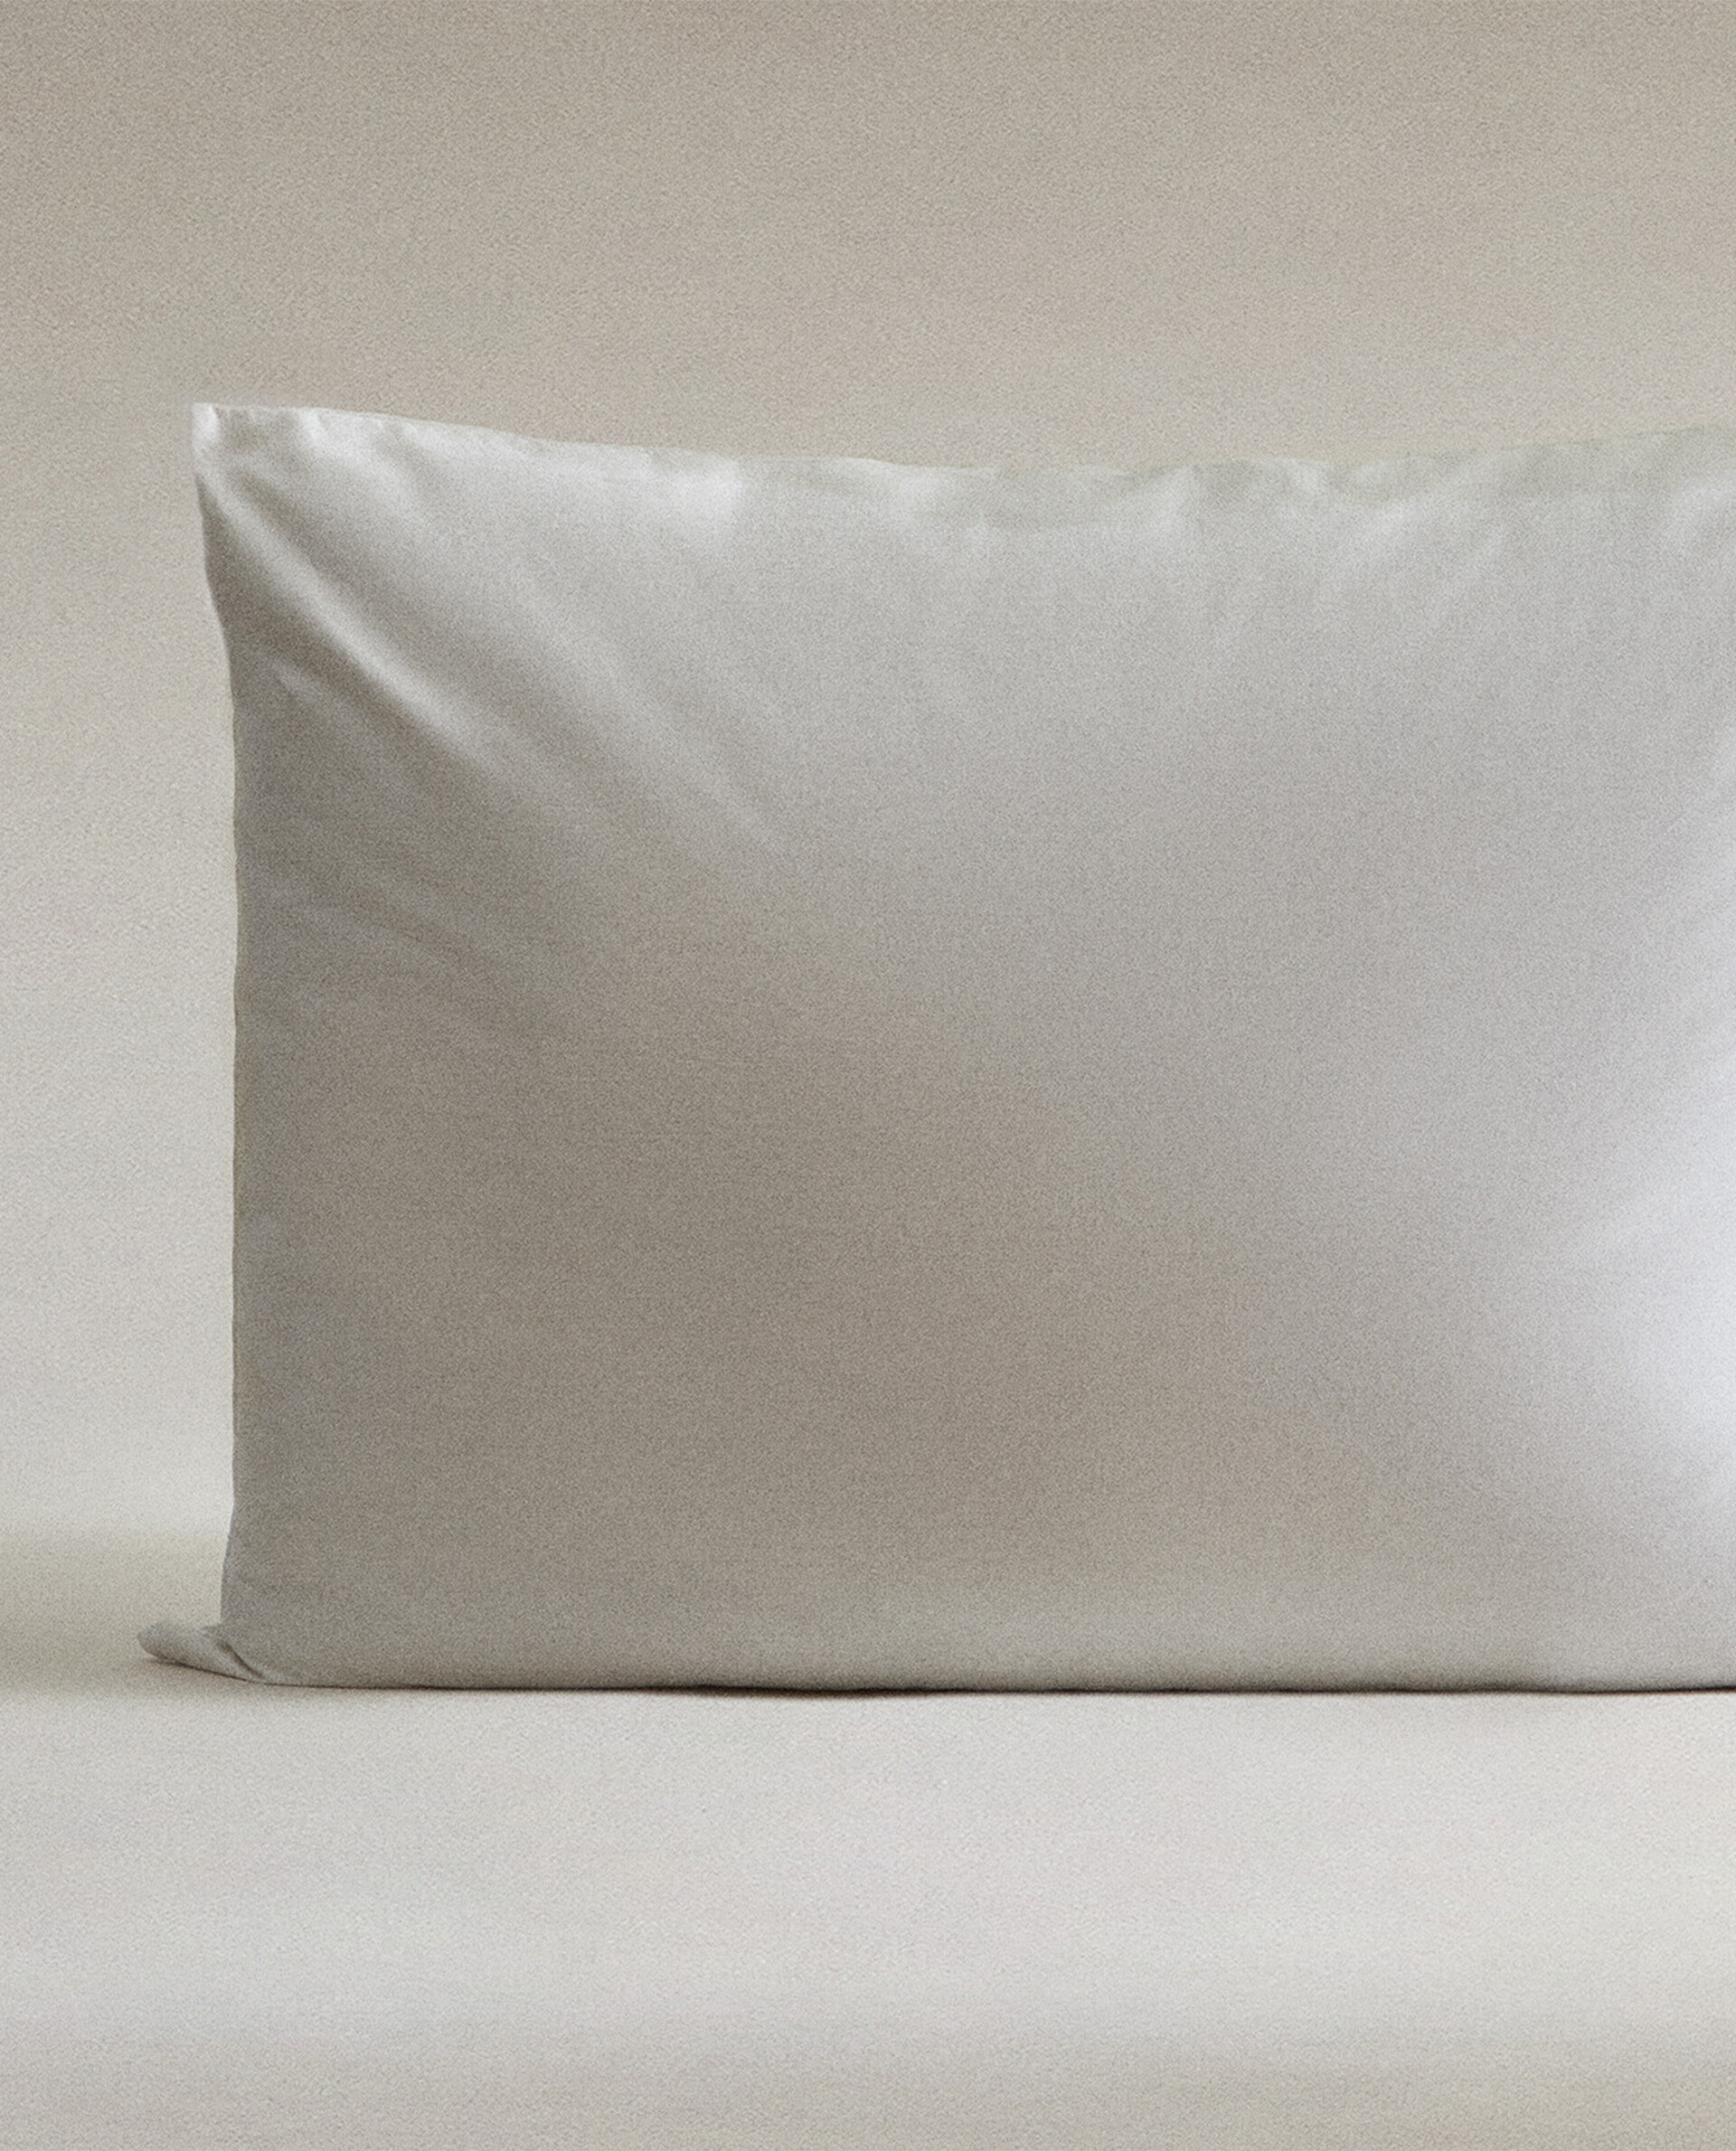 LANE LINEN Relleno de almohada de 18 x 18 pulgadas, paquete de 2 unidades,  color blanco, rellenos de almohada alternativos de plumón para fundas de